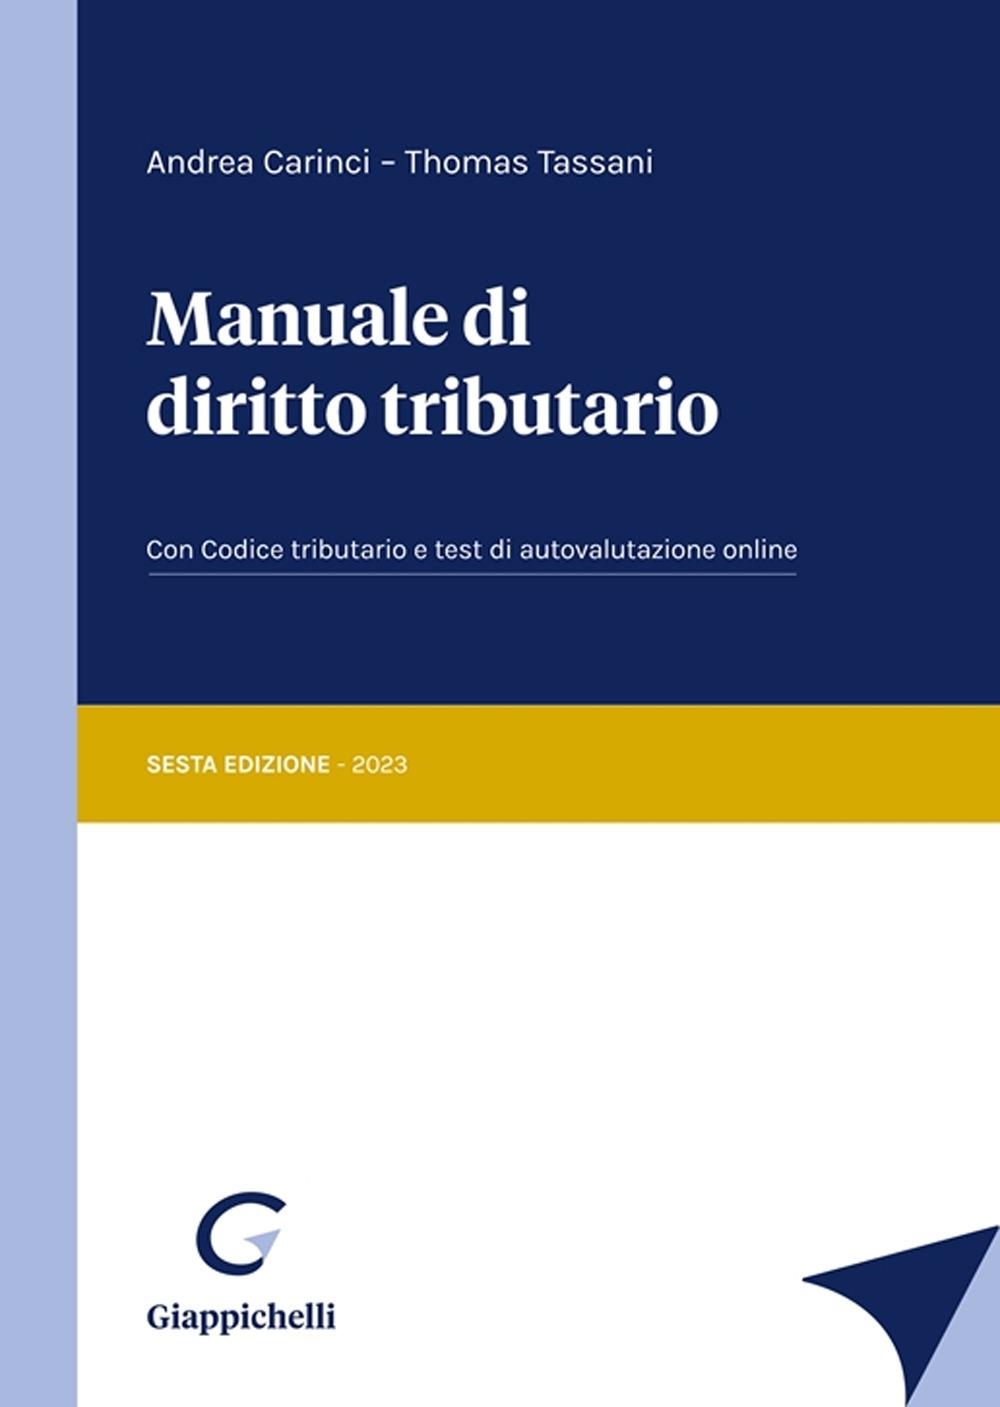 Libri Andrea Carinci / Thomas Tassani - Manuale Di Diritto Tributario NUOVO SIGILLATO, EDIZIONE DEL 26/09/2023 SUBITO DISPONIBILE